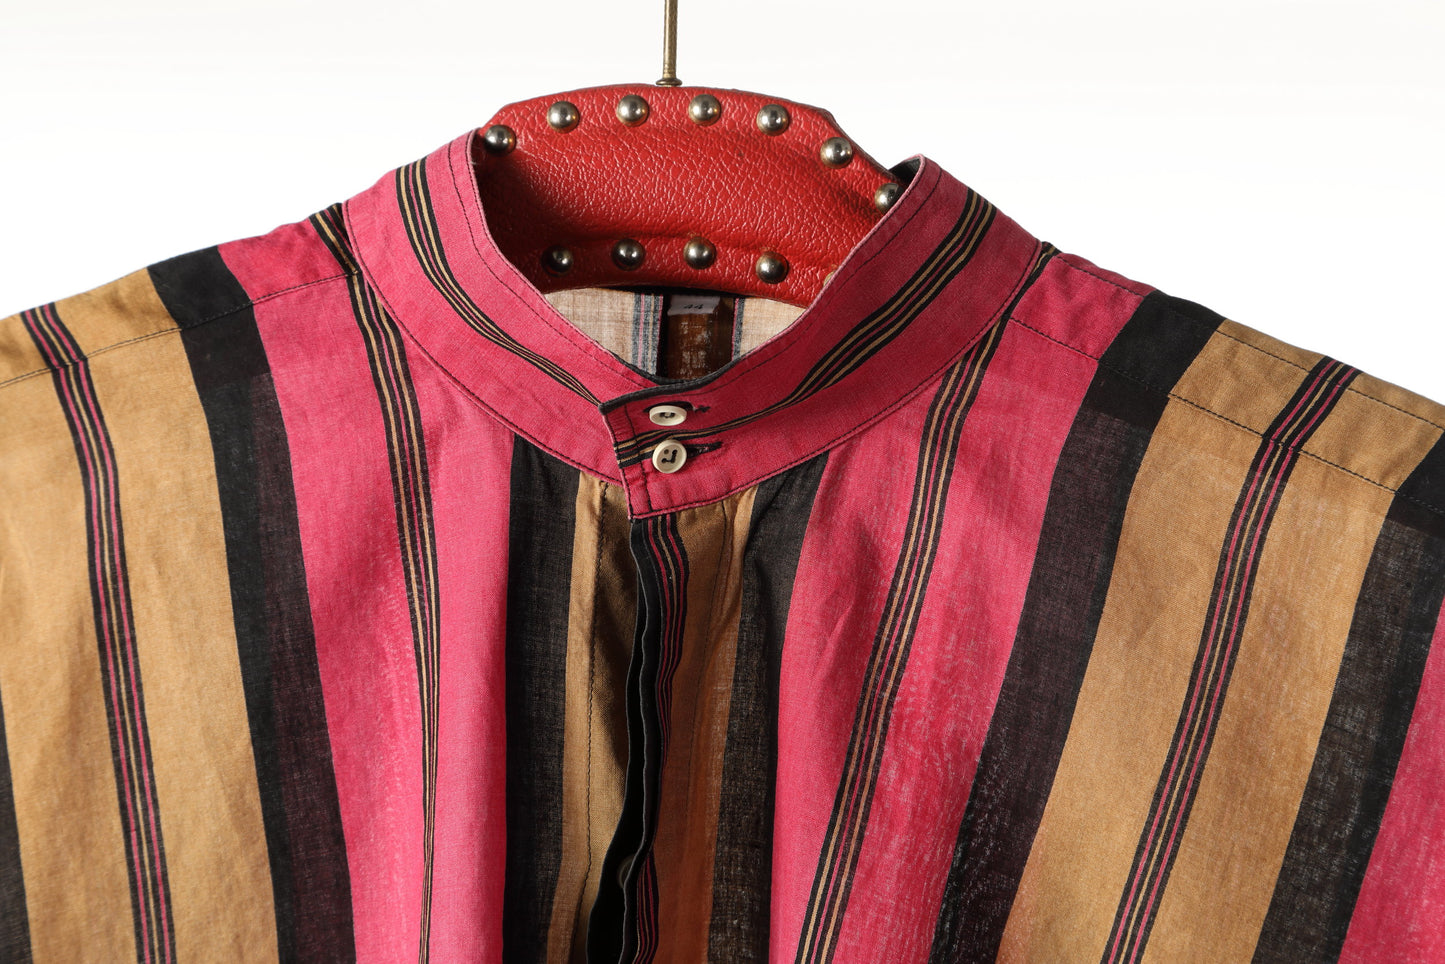 Camicia Gianni Versace anni 80